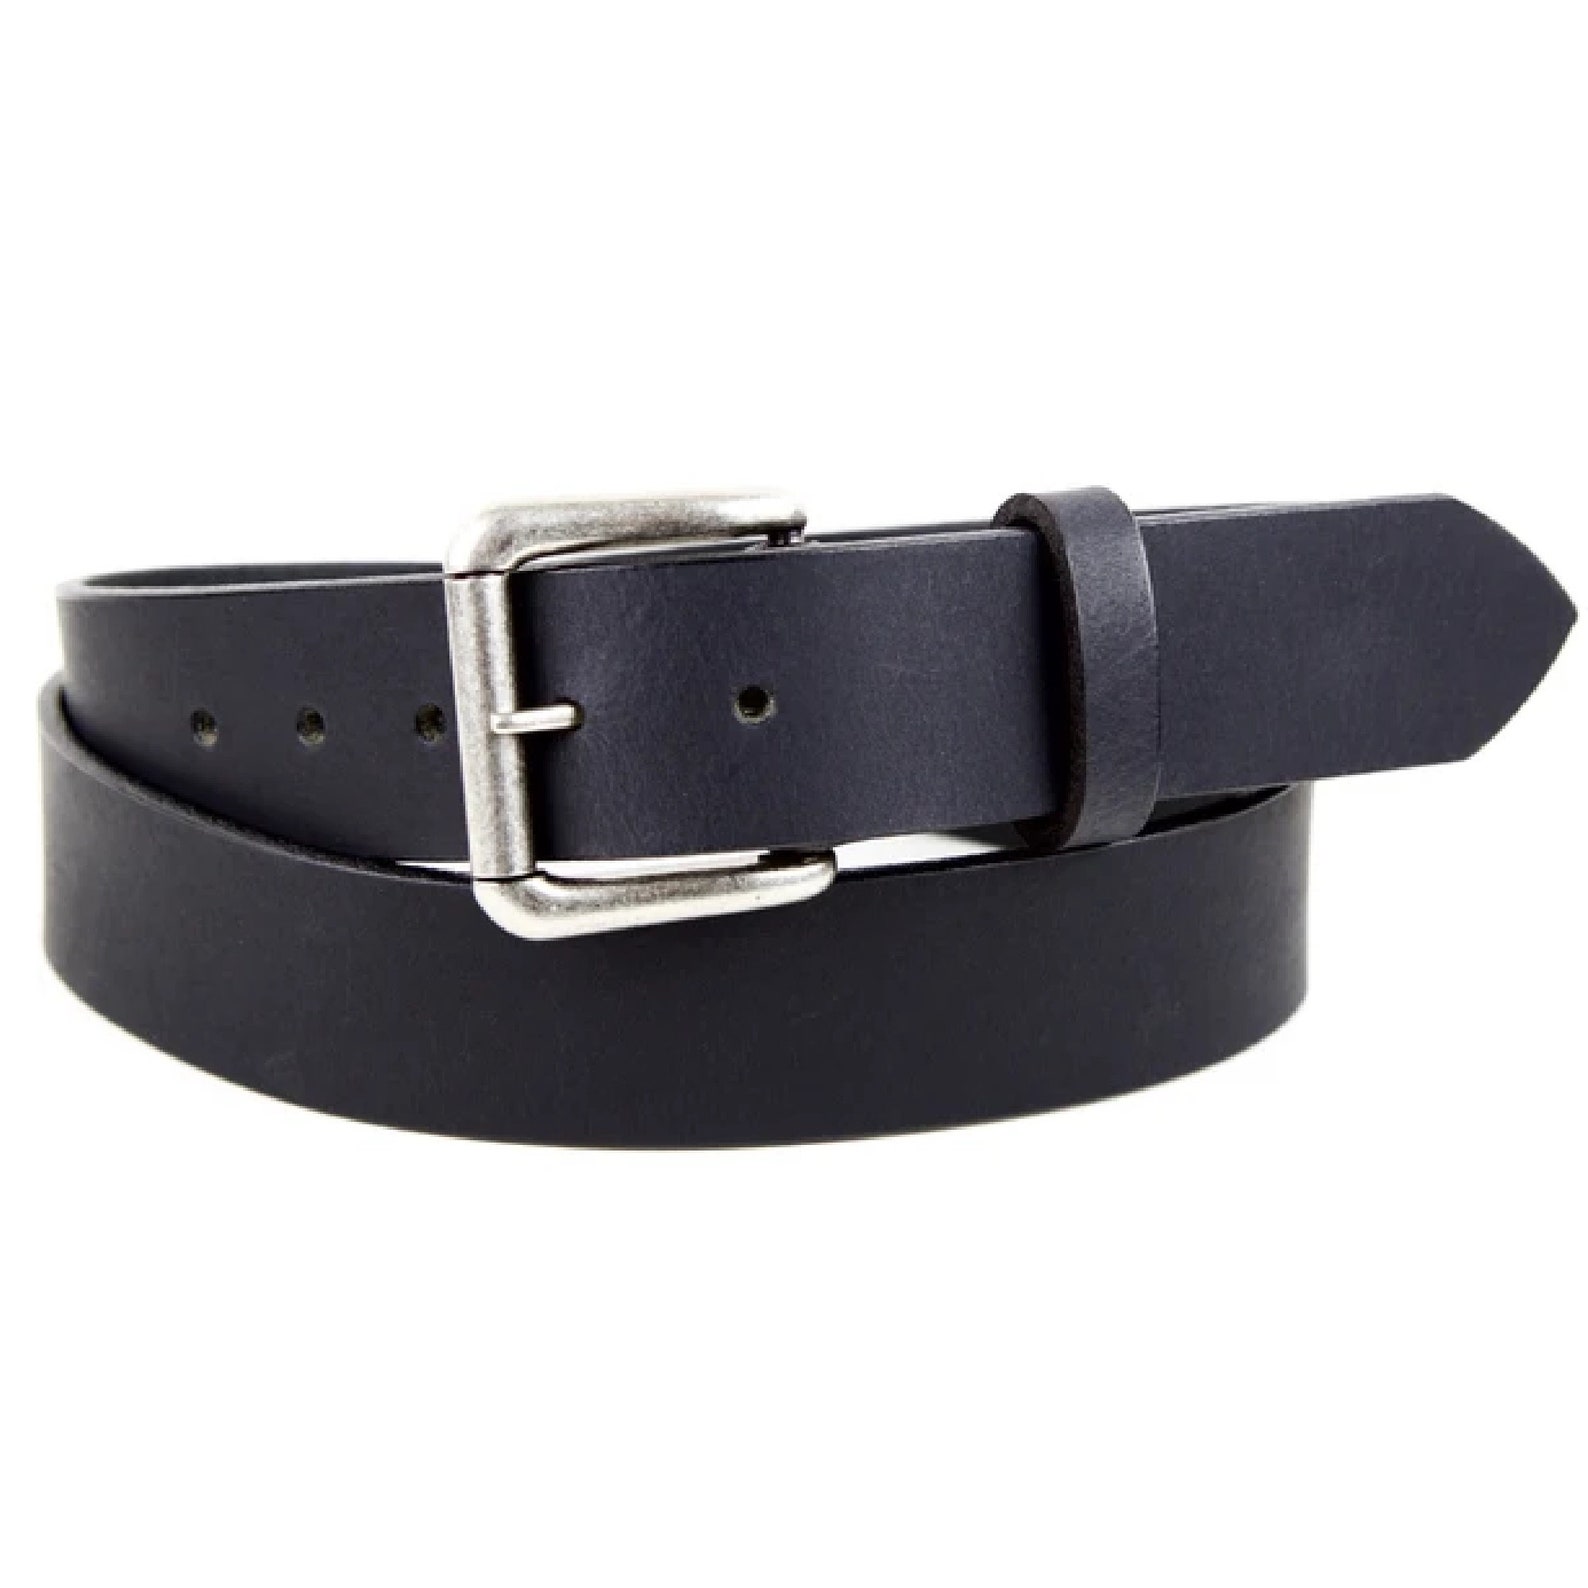 Men's Matte Black Leather Belt With Silver Buckle Belt - Etsy